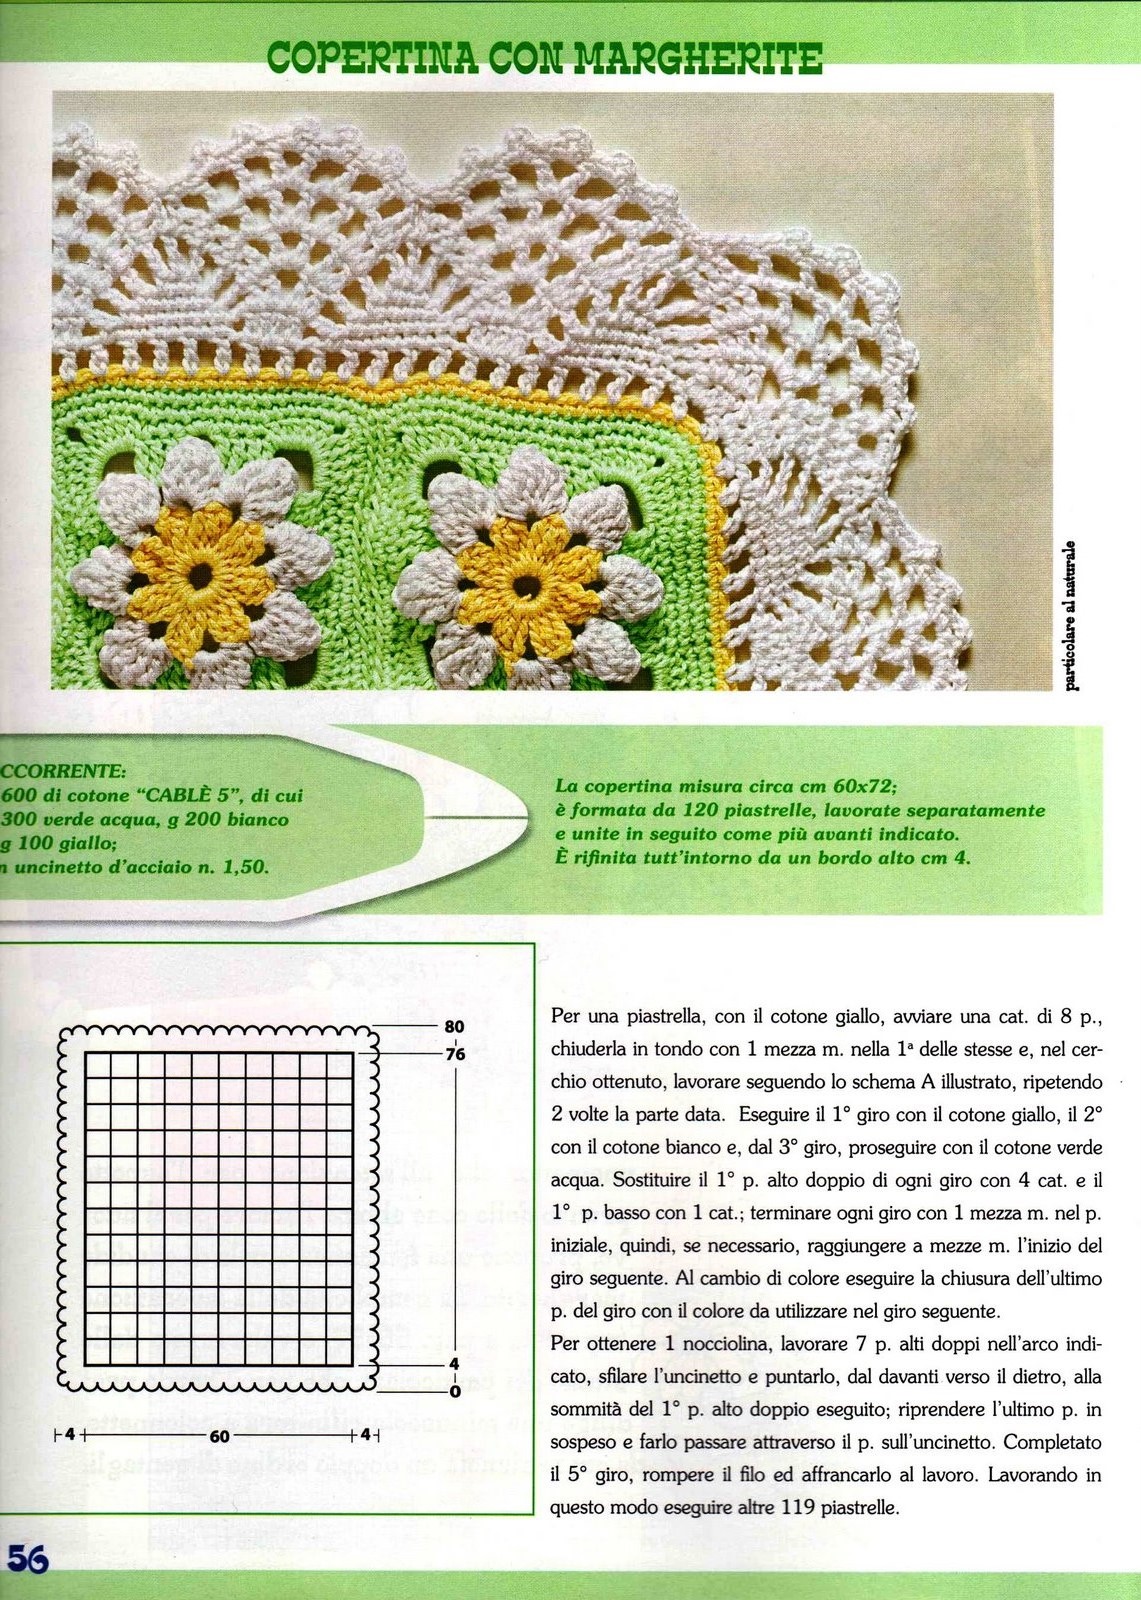 crochet baby blanket green daisies (1)